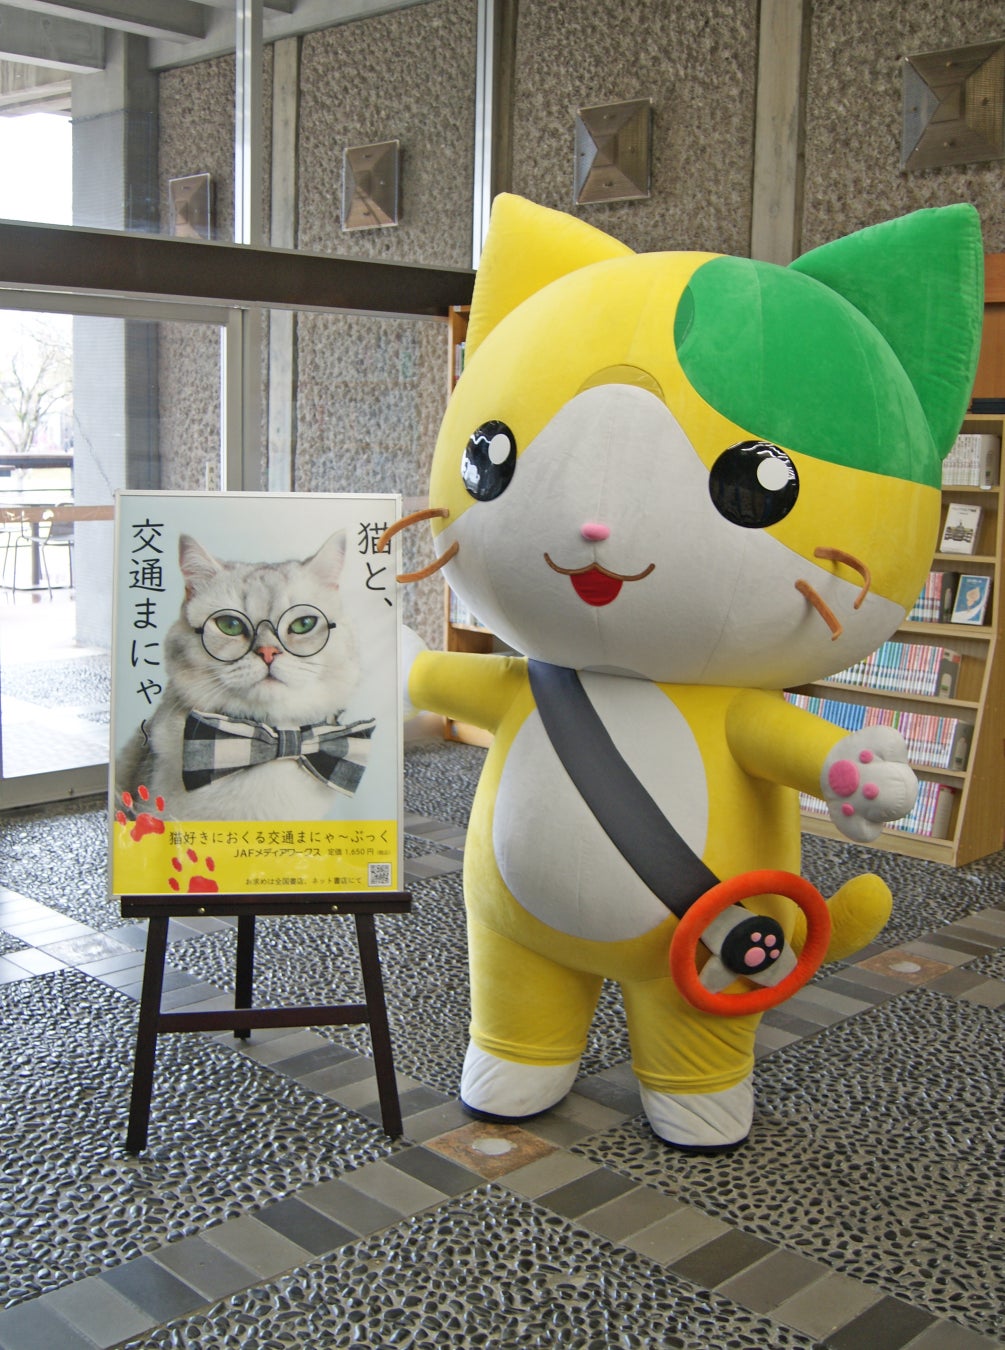 【JAFメディアワークス】佐賀県へ交通マナーの本『猫好きにおくる交通まにゃ～ぶっく』を寄贈し、寄贈式が行...